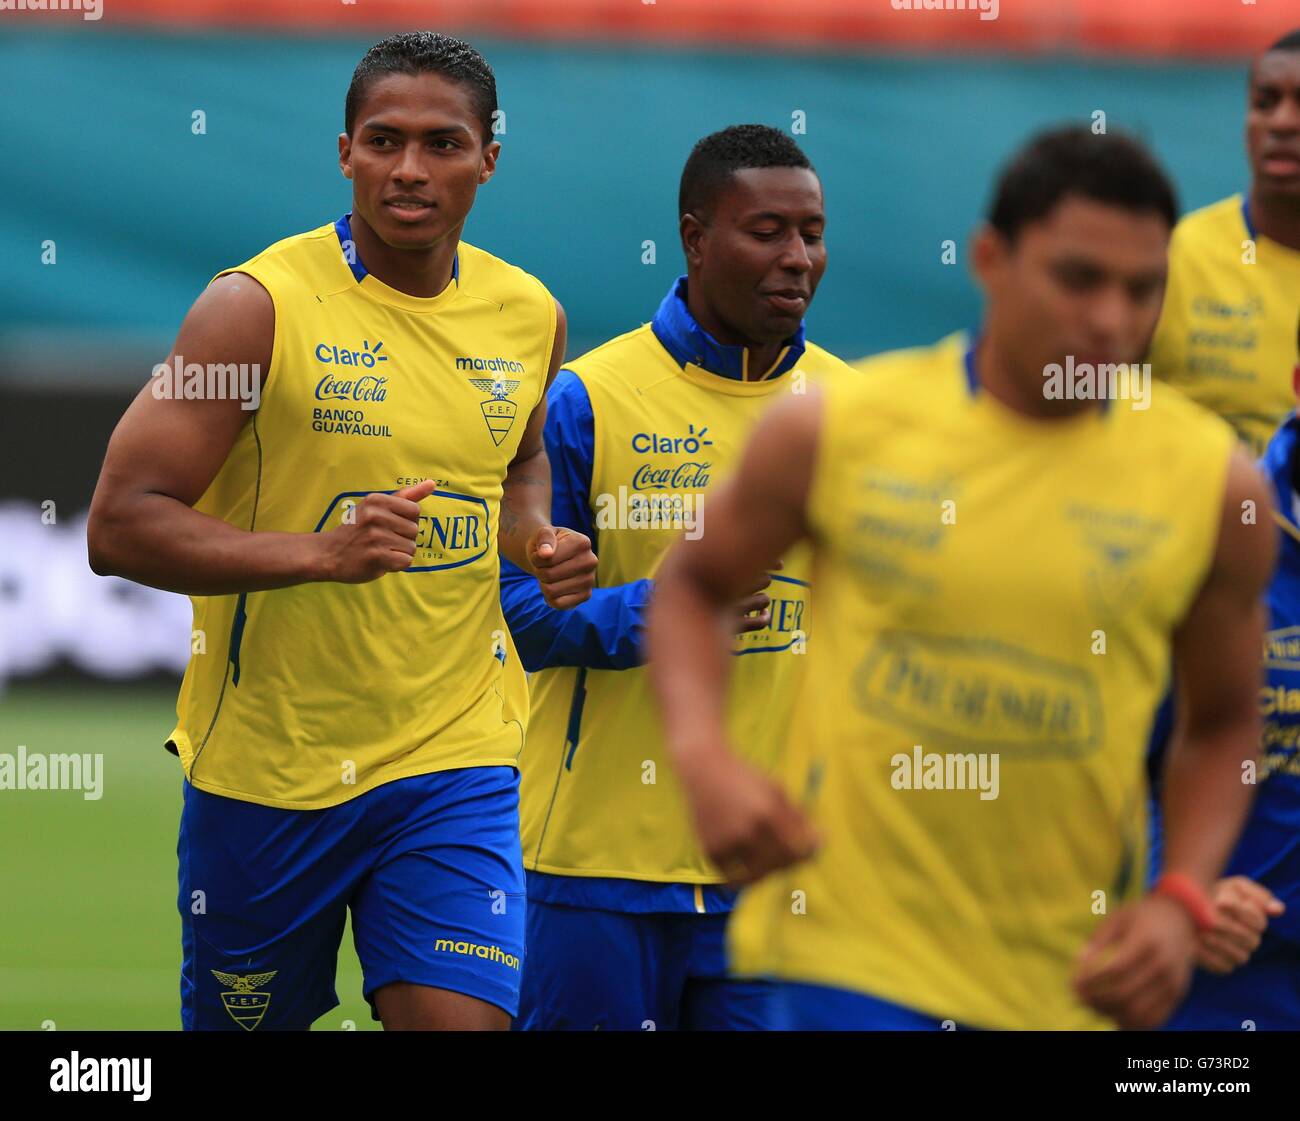 Soccer - World Cup 2014 - Miami Training Camp - England v Ecuador - Ecuador Training Session - Sun Life Stadium Stock Photo